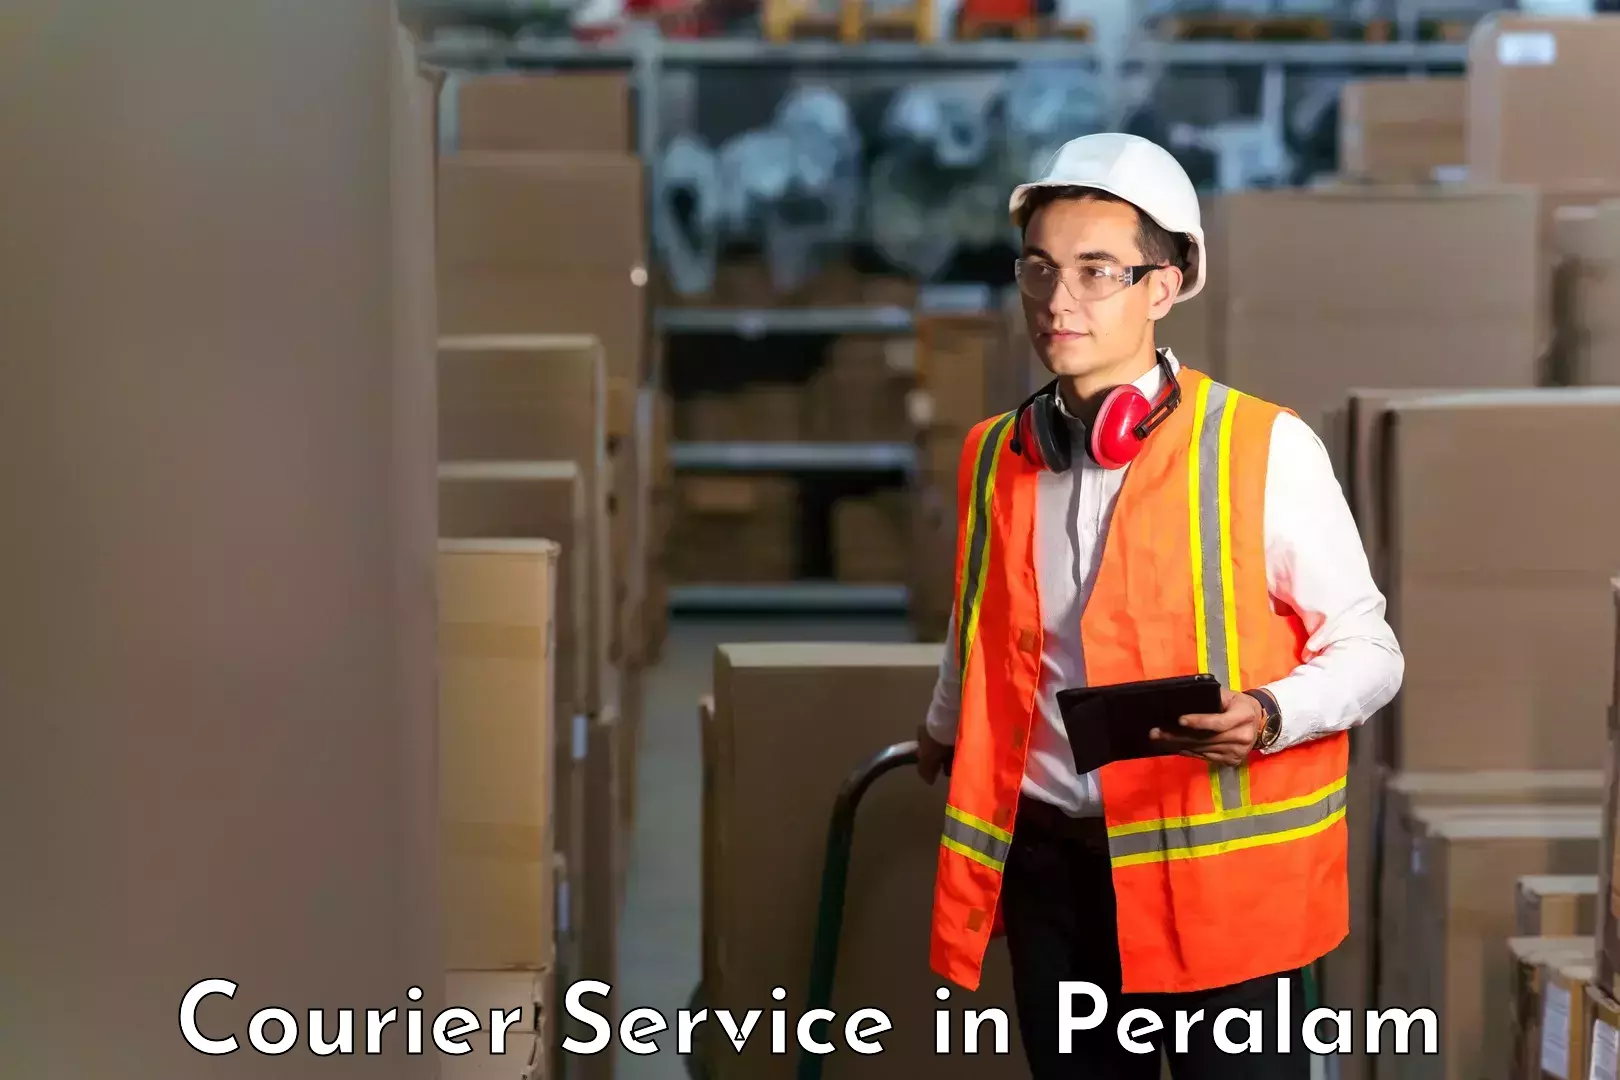 Express logistics service in Peralam